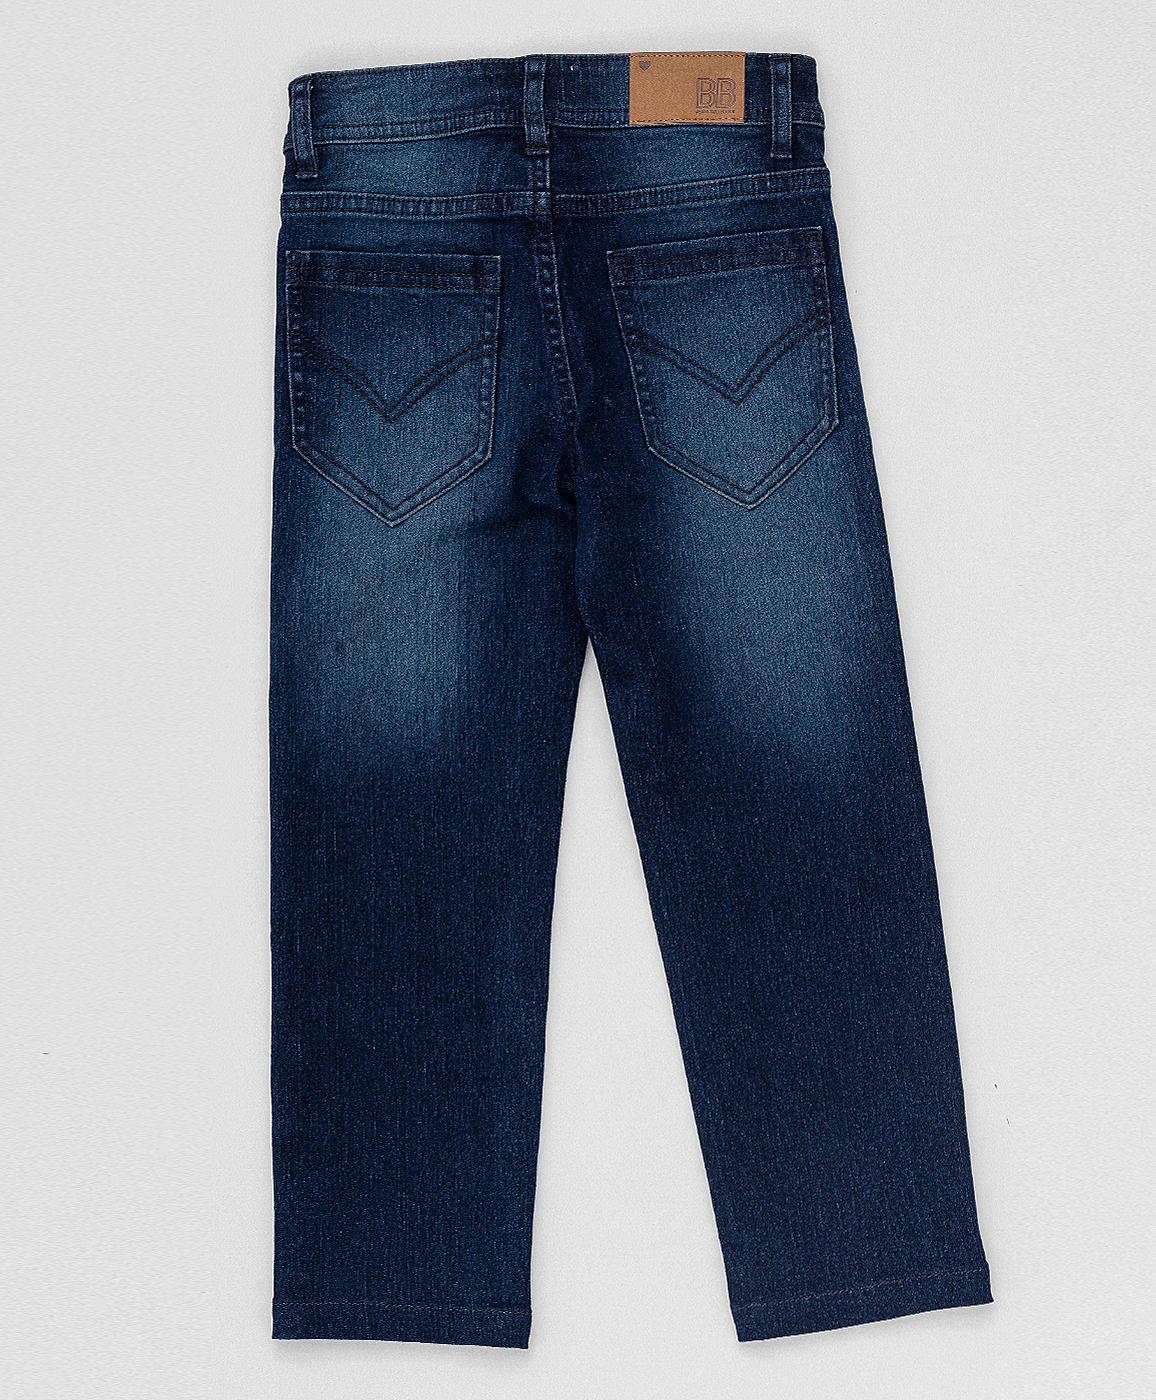 Синие прямые джинсы Button Blue 220BBGJC6302D500, размер 158, цвет синий regular fit / прямые - фото 2